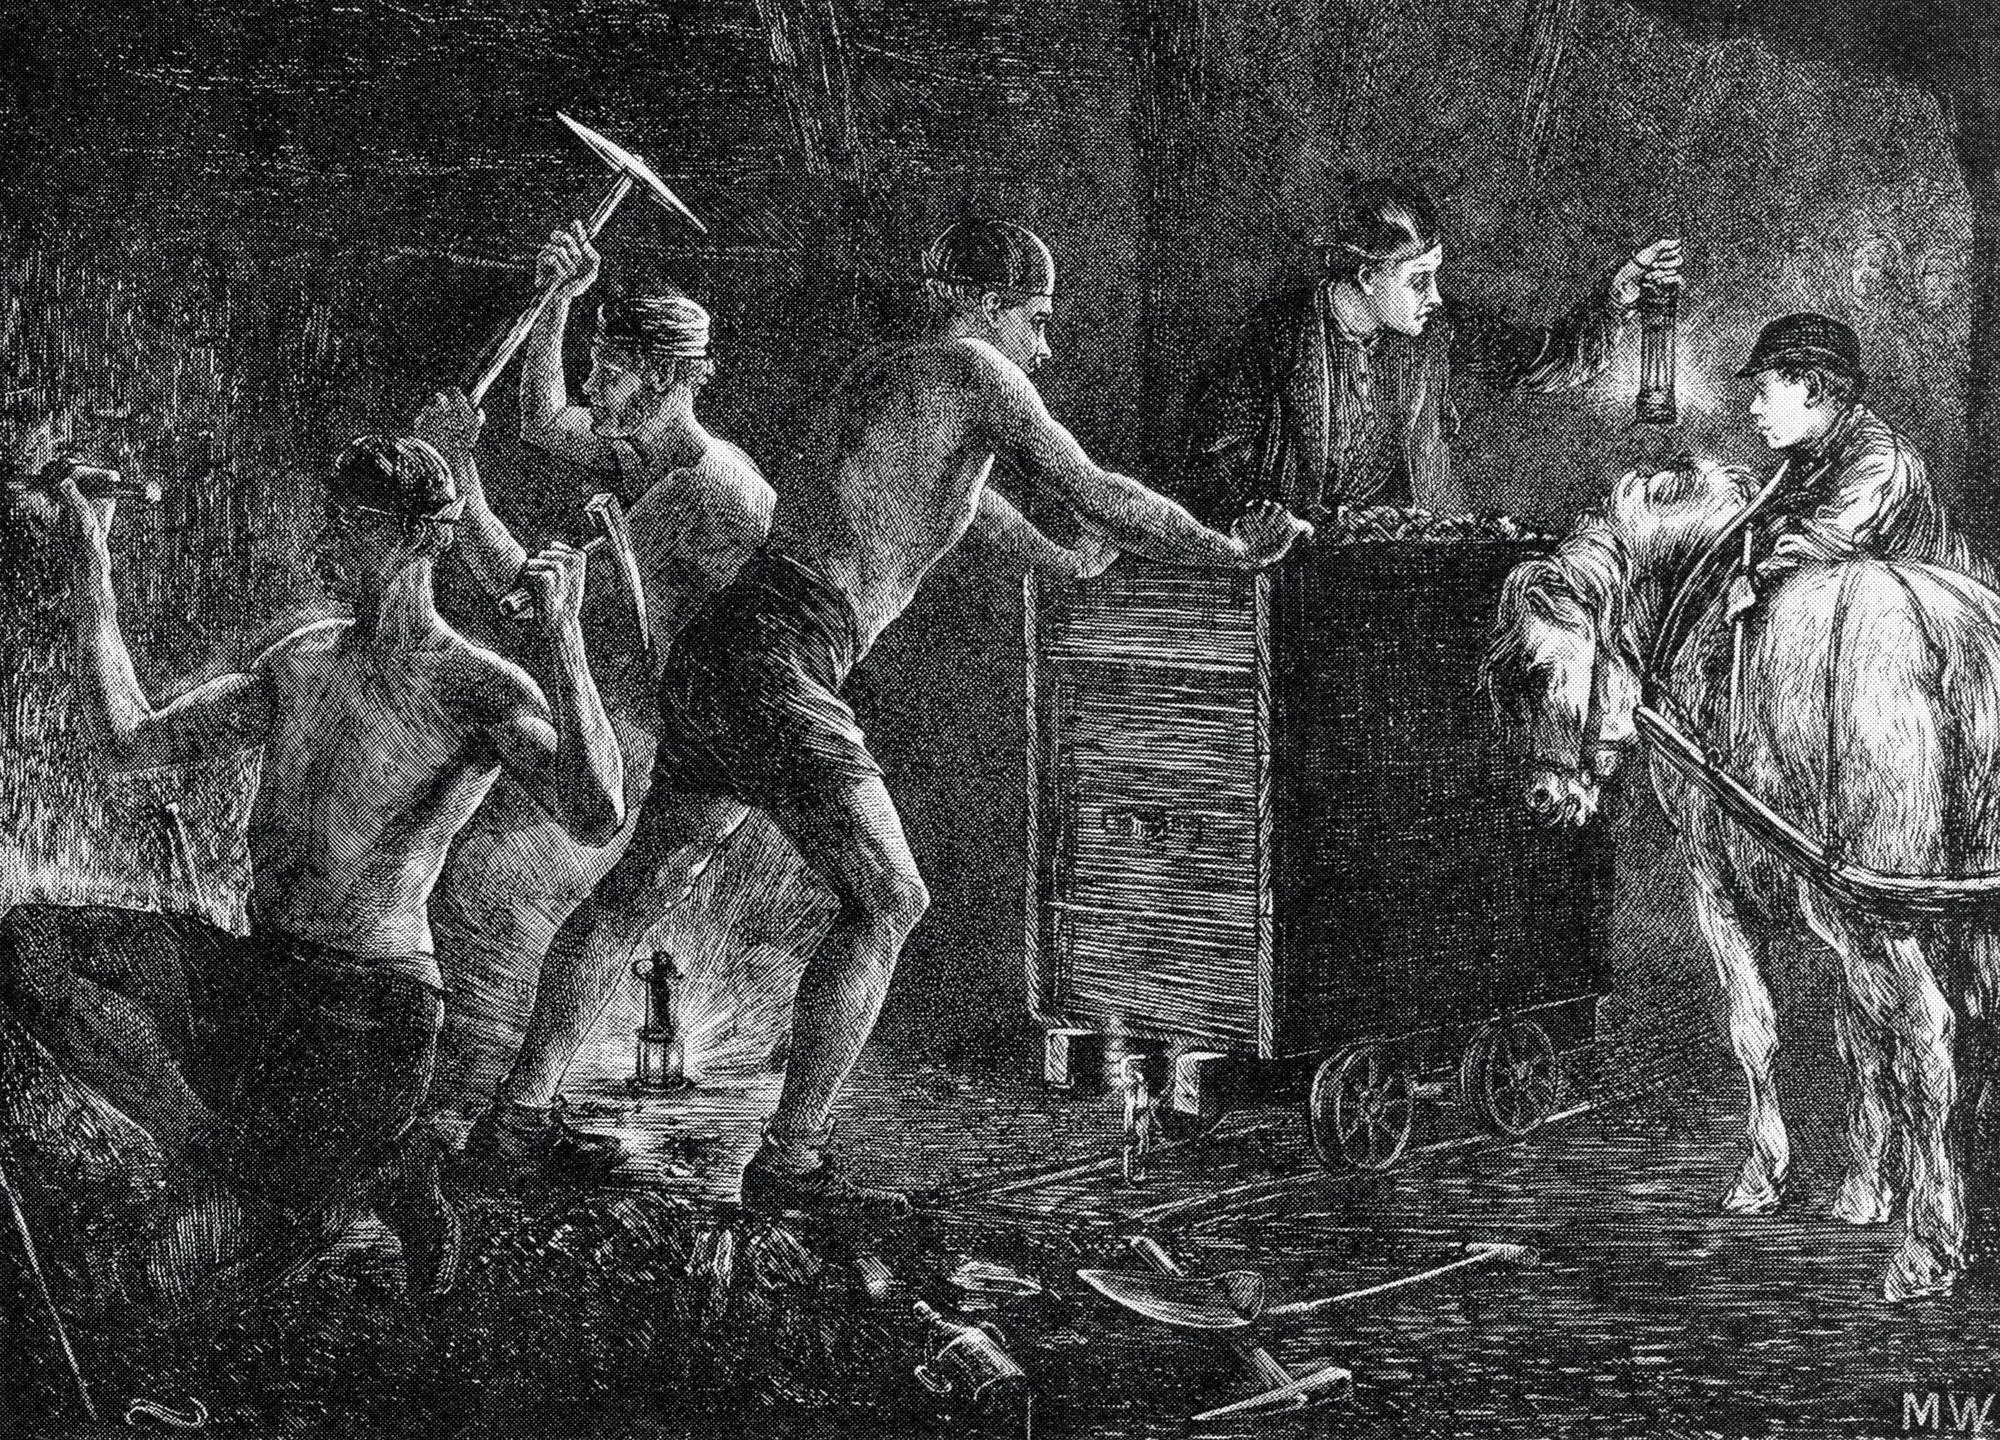 Anonyme, Mineurs de charbon,
1871, dessin paru dans The
Graphic.